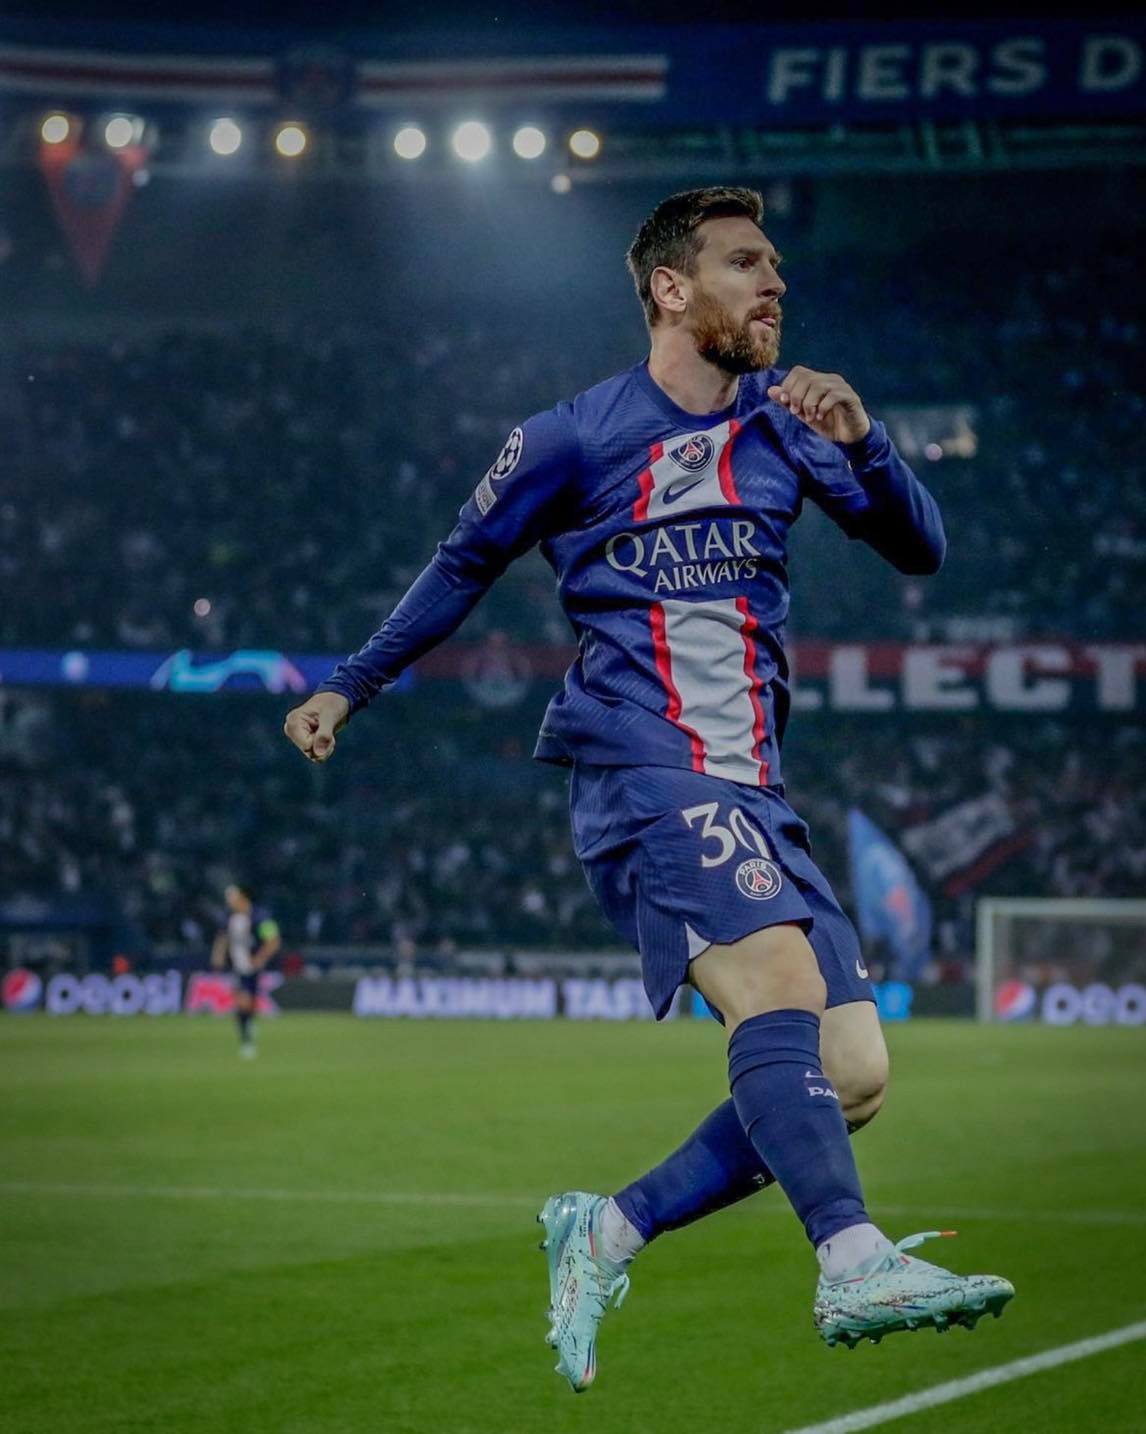 Show diễn hoàn hảo của Messi: Bạn là fan của Messi? Bạn muốn xem lại những trận cầu đỉnh cao của anh chàng này? Hãy xem ảnh liên quan đến từ khóa Show diễn hoàn hảo của Messi và tận hưởng những màn trình diễn hoàn hảo của ngôi sao bóng đá này.